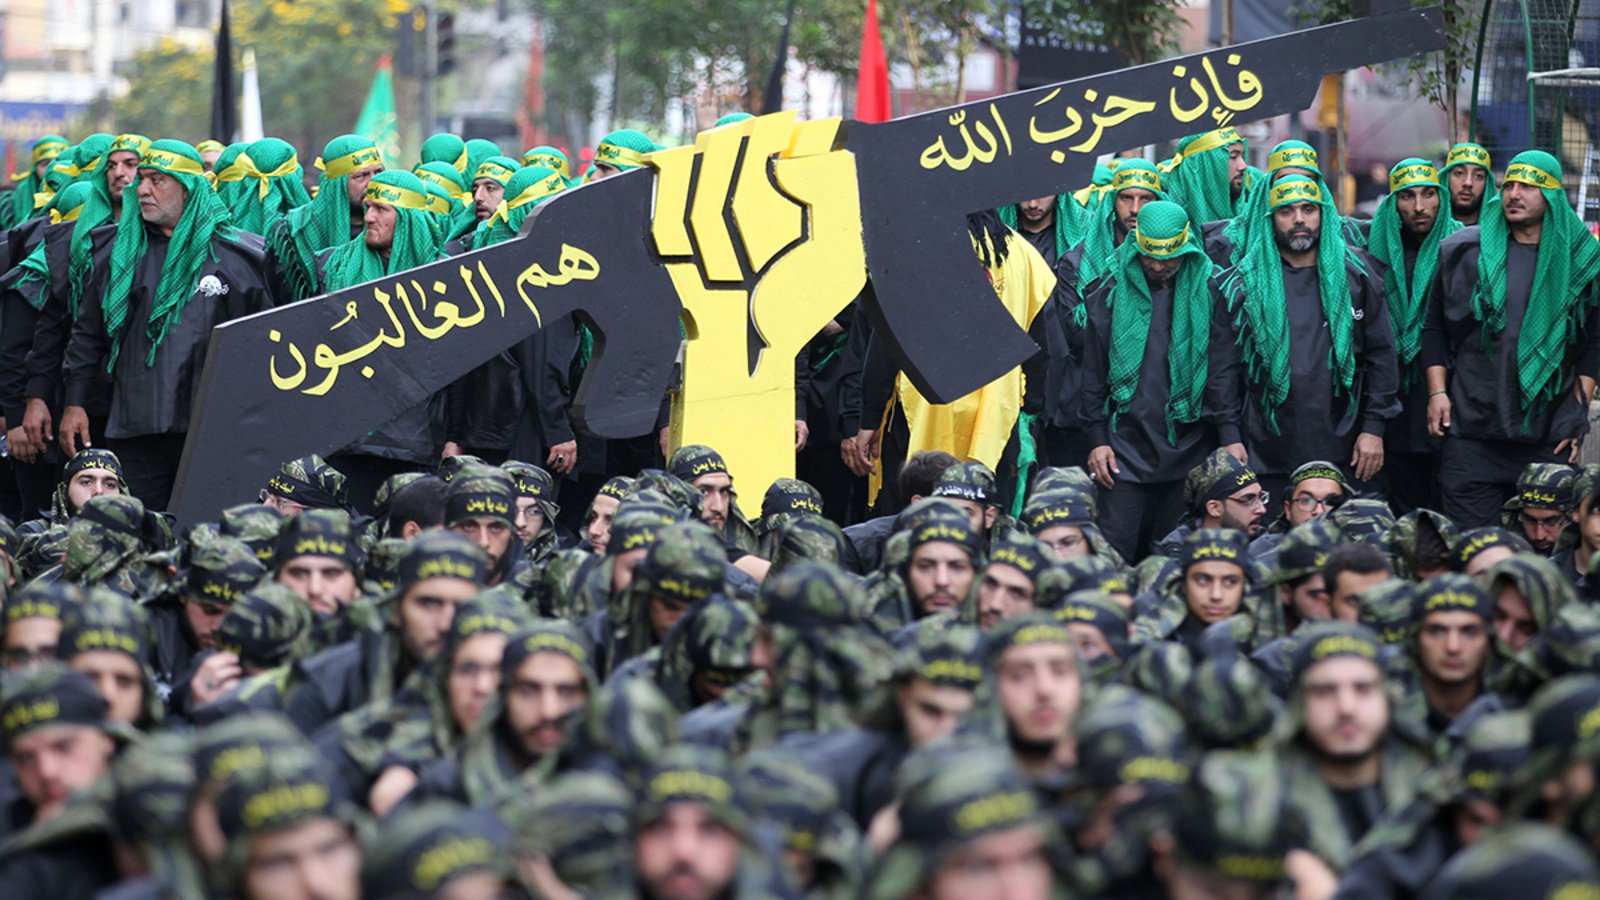  Germania interzice Hezbollah pe teritoriul său şi a desemnat-o drept organizaţie teroristă